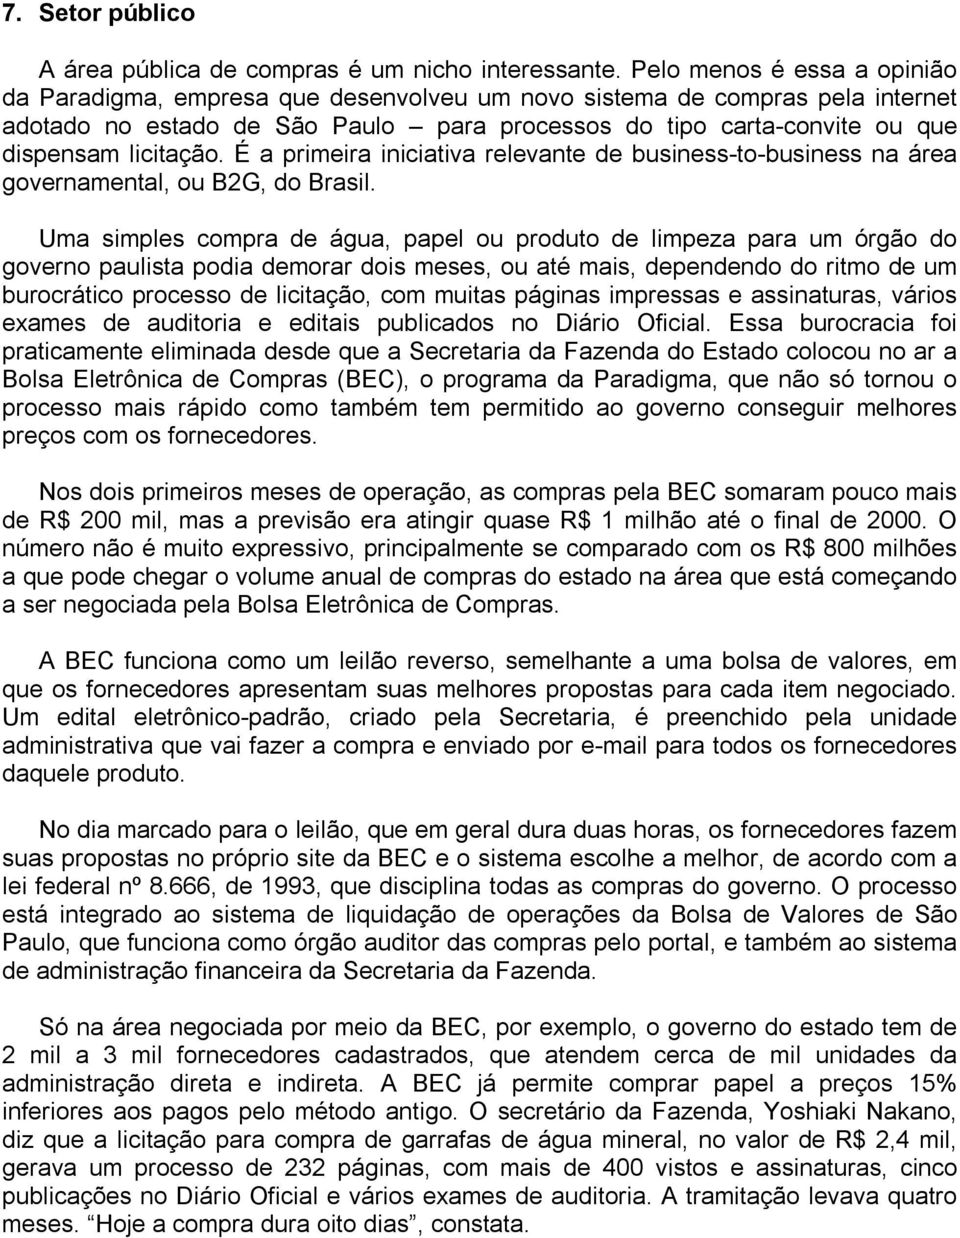 licitação. É a primeira iniciativa relevante de business-to-business na área governamental, ou B2G, do Brasil.